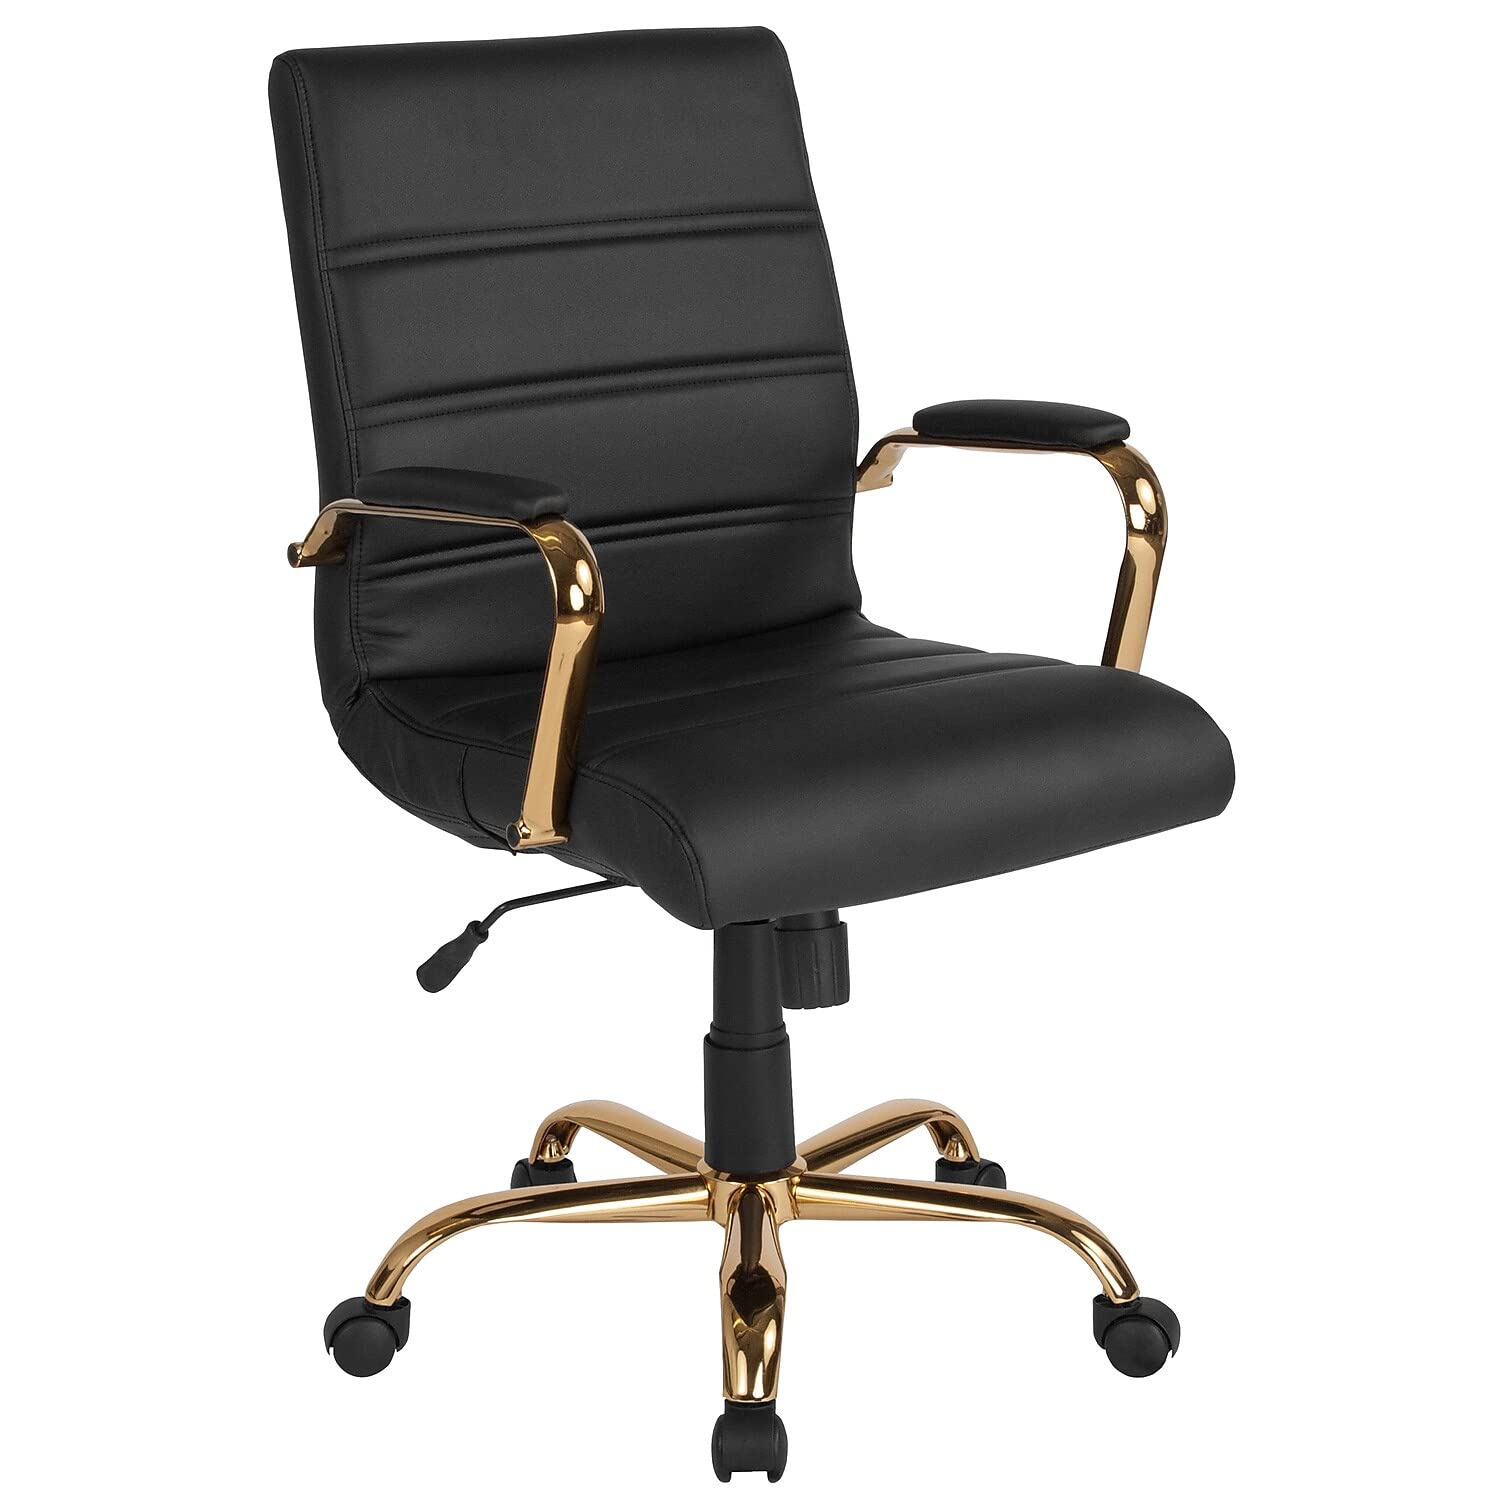  Flash Furniture Настольный стул со средней спинкой - черный LeatherSoft Executive Swivel Office Chair с золотой рамой - Кресло с вращающ...